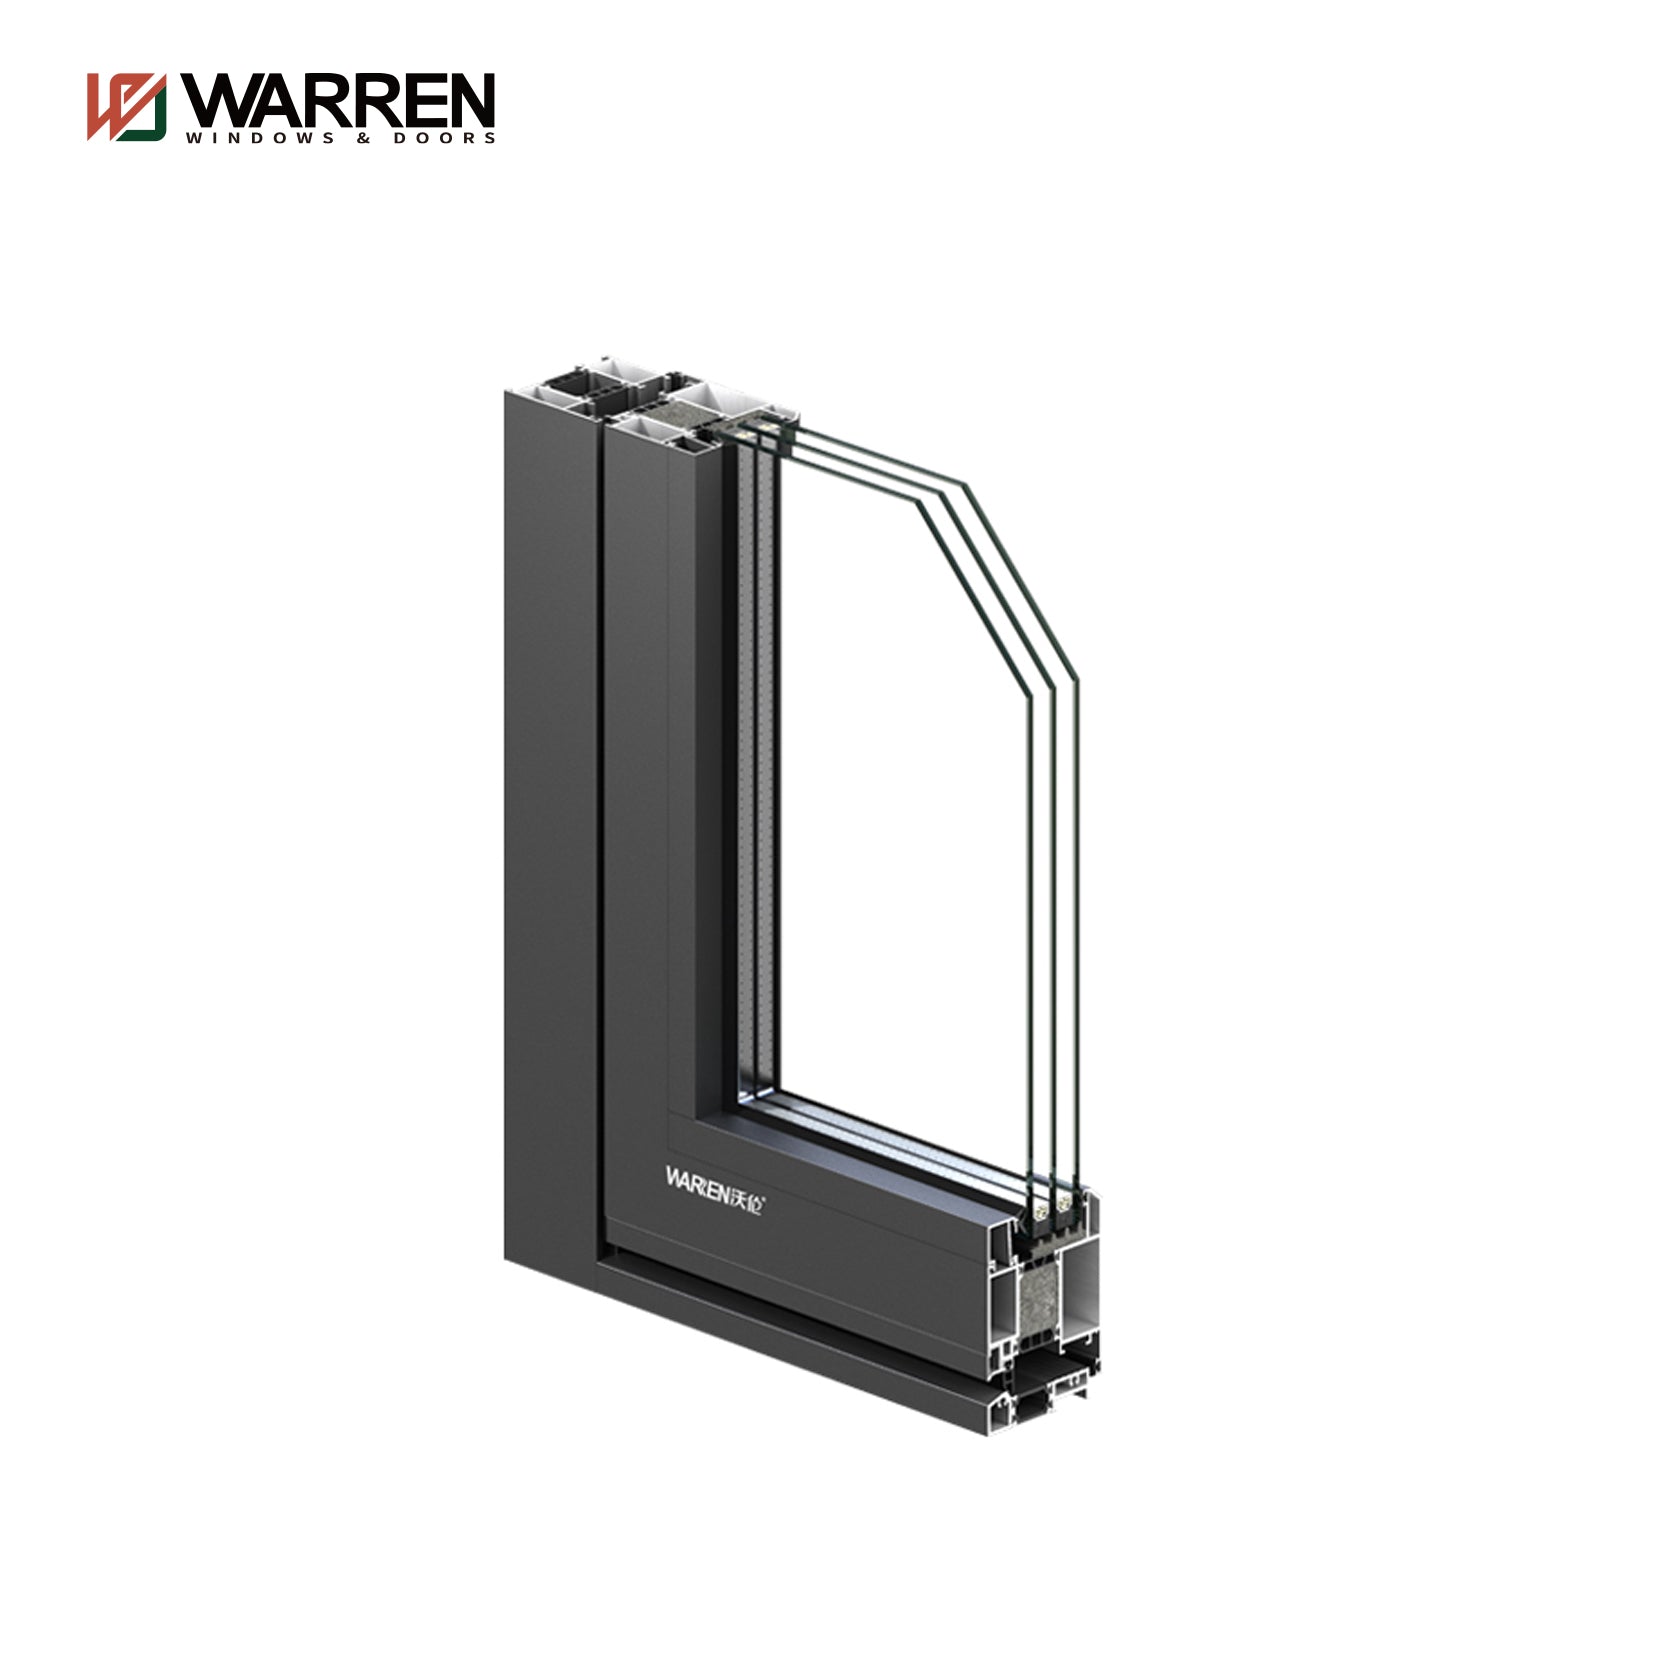 Warren 48x80 Aluminium Internal French Doors with Double Doors Black